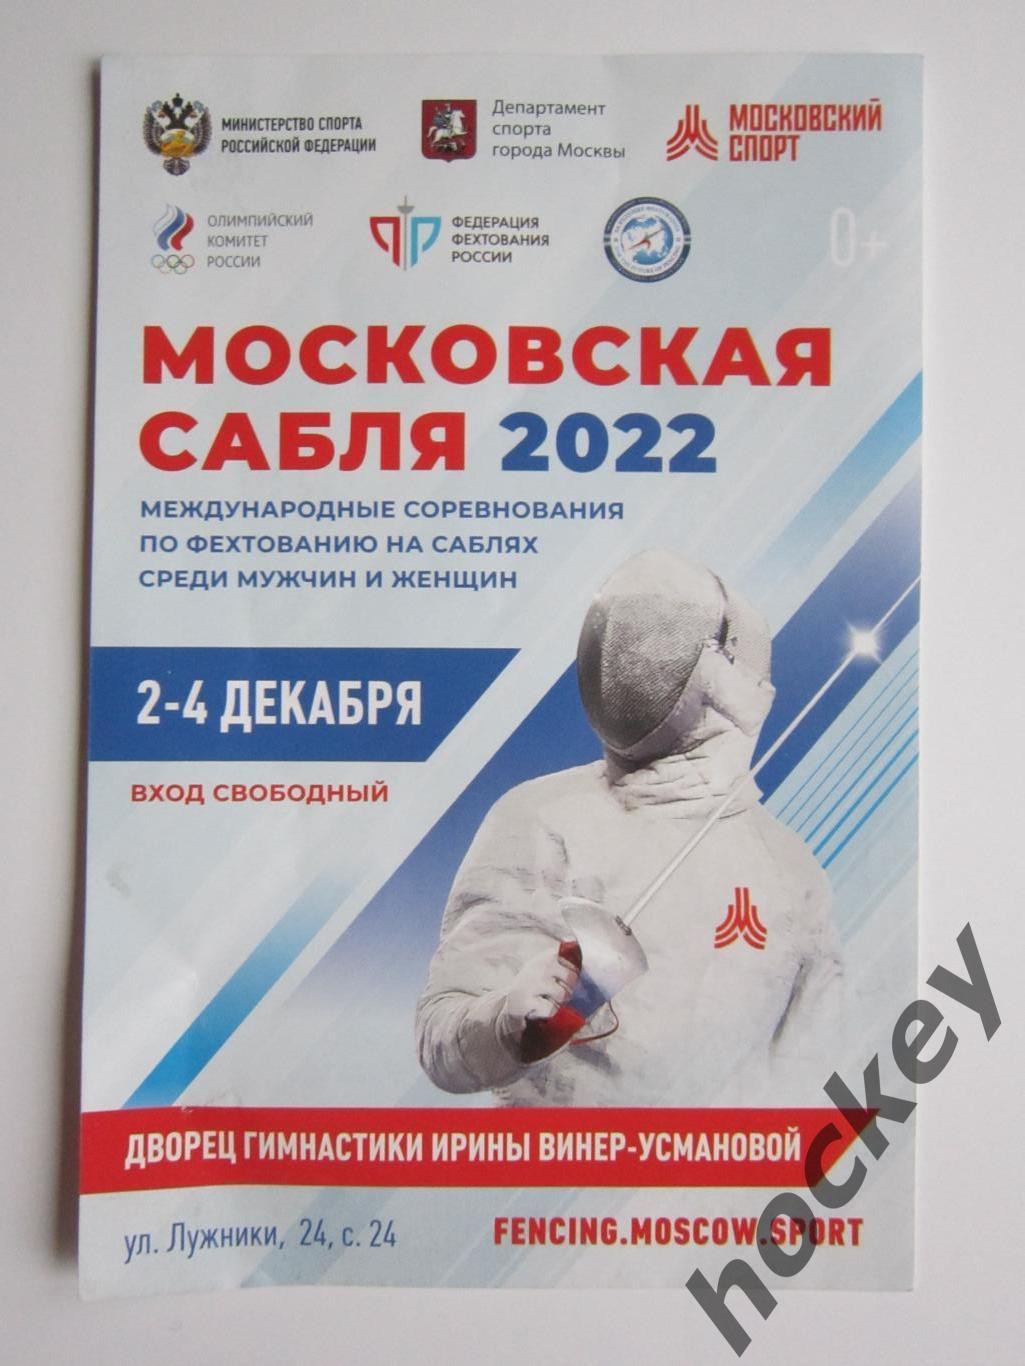 Приглашение: Московская сабля-2022. Международные соревнования на саблях